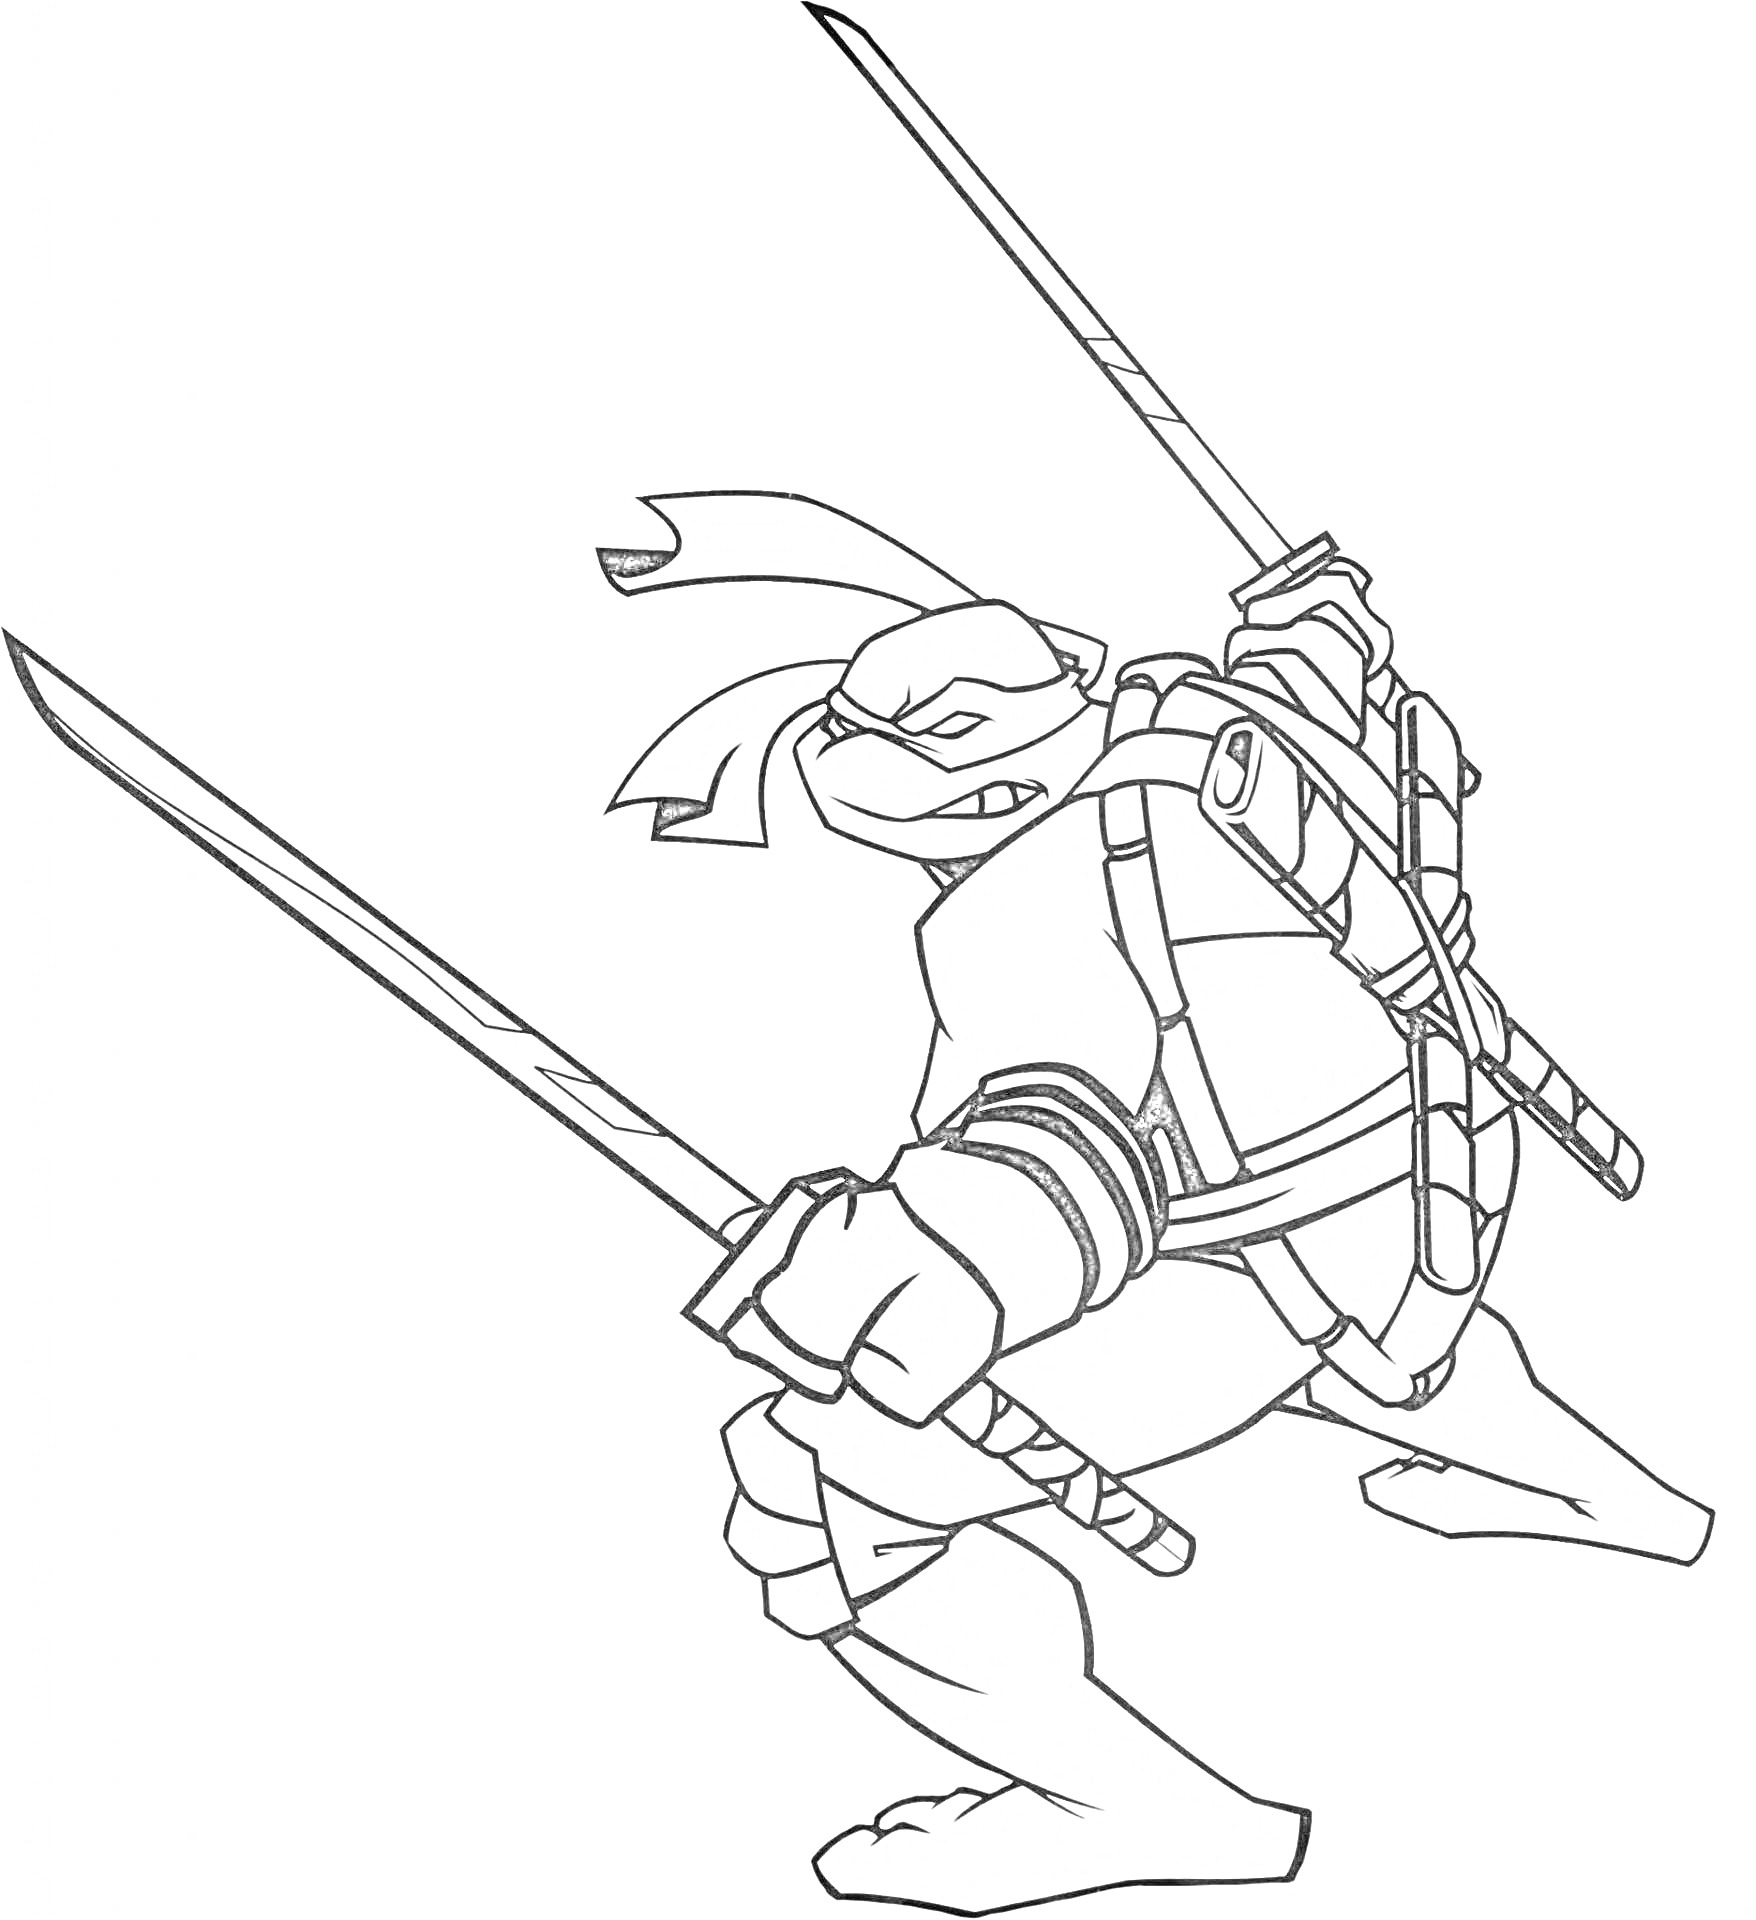 Раскраска Черепашка-ниндзя с двумя мечами в боевой стойке